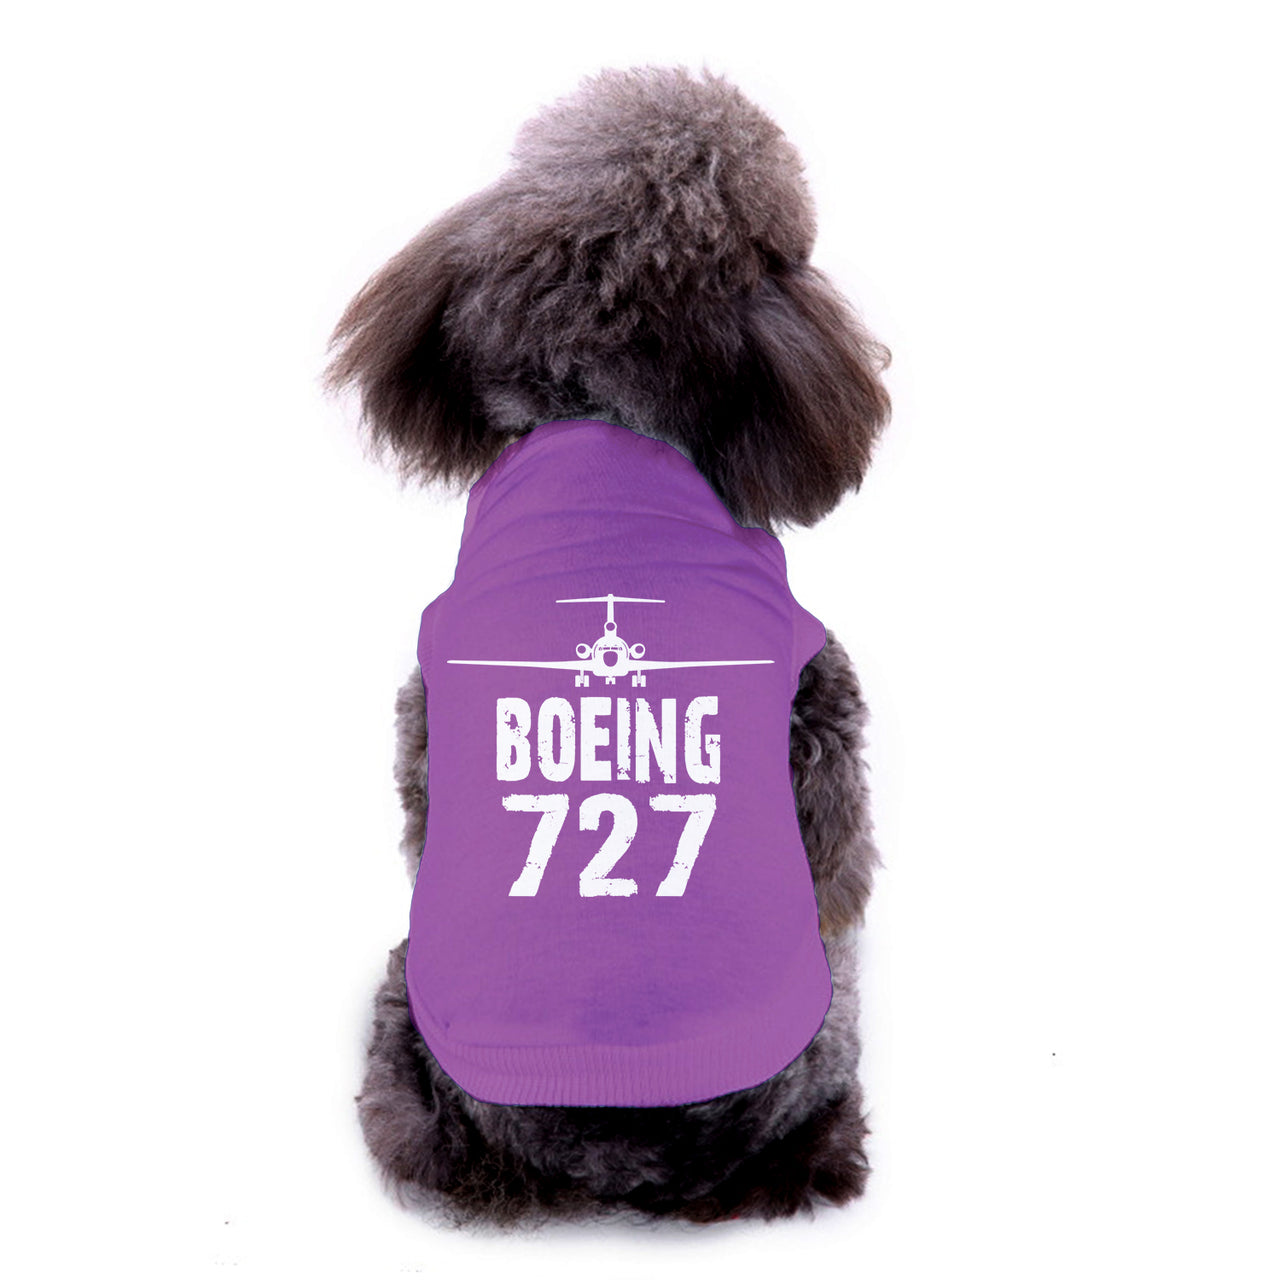 Boeing 727 & Plane Designed Dog Pet Vests